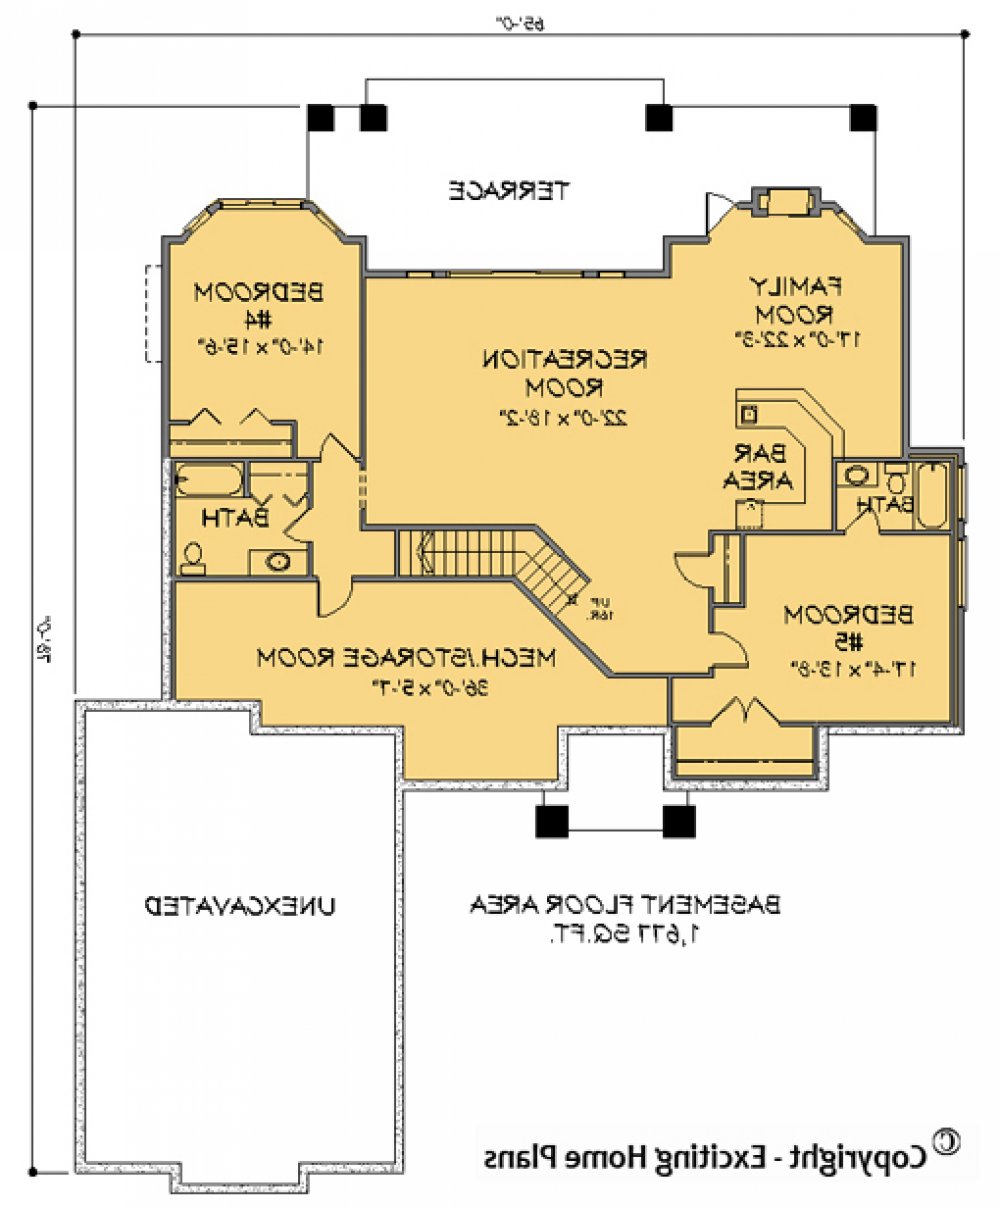 House Plan E1144-10 Lower Floor Plan REVERSE